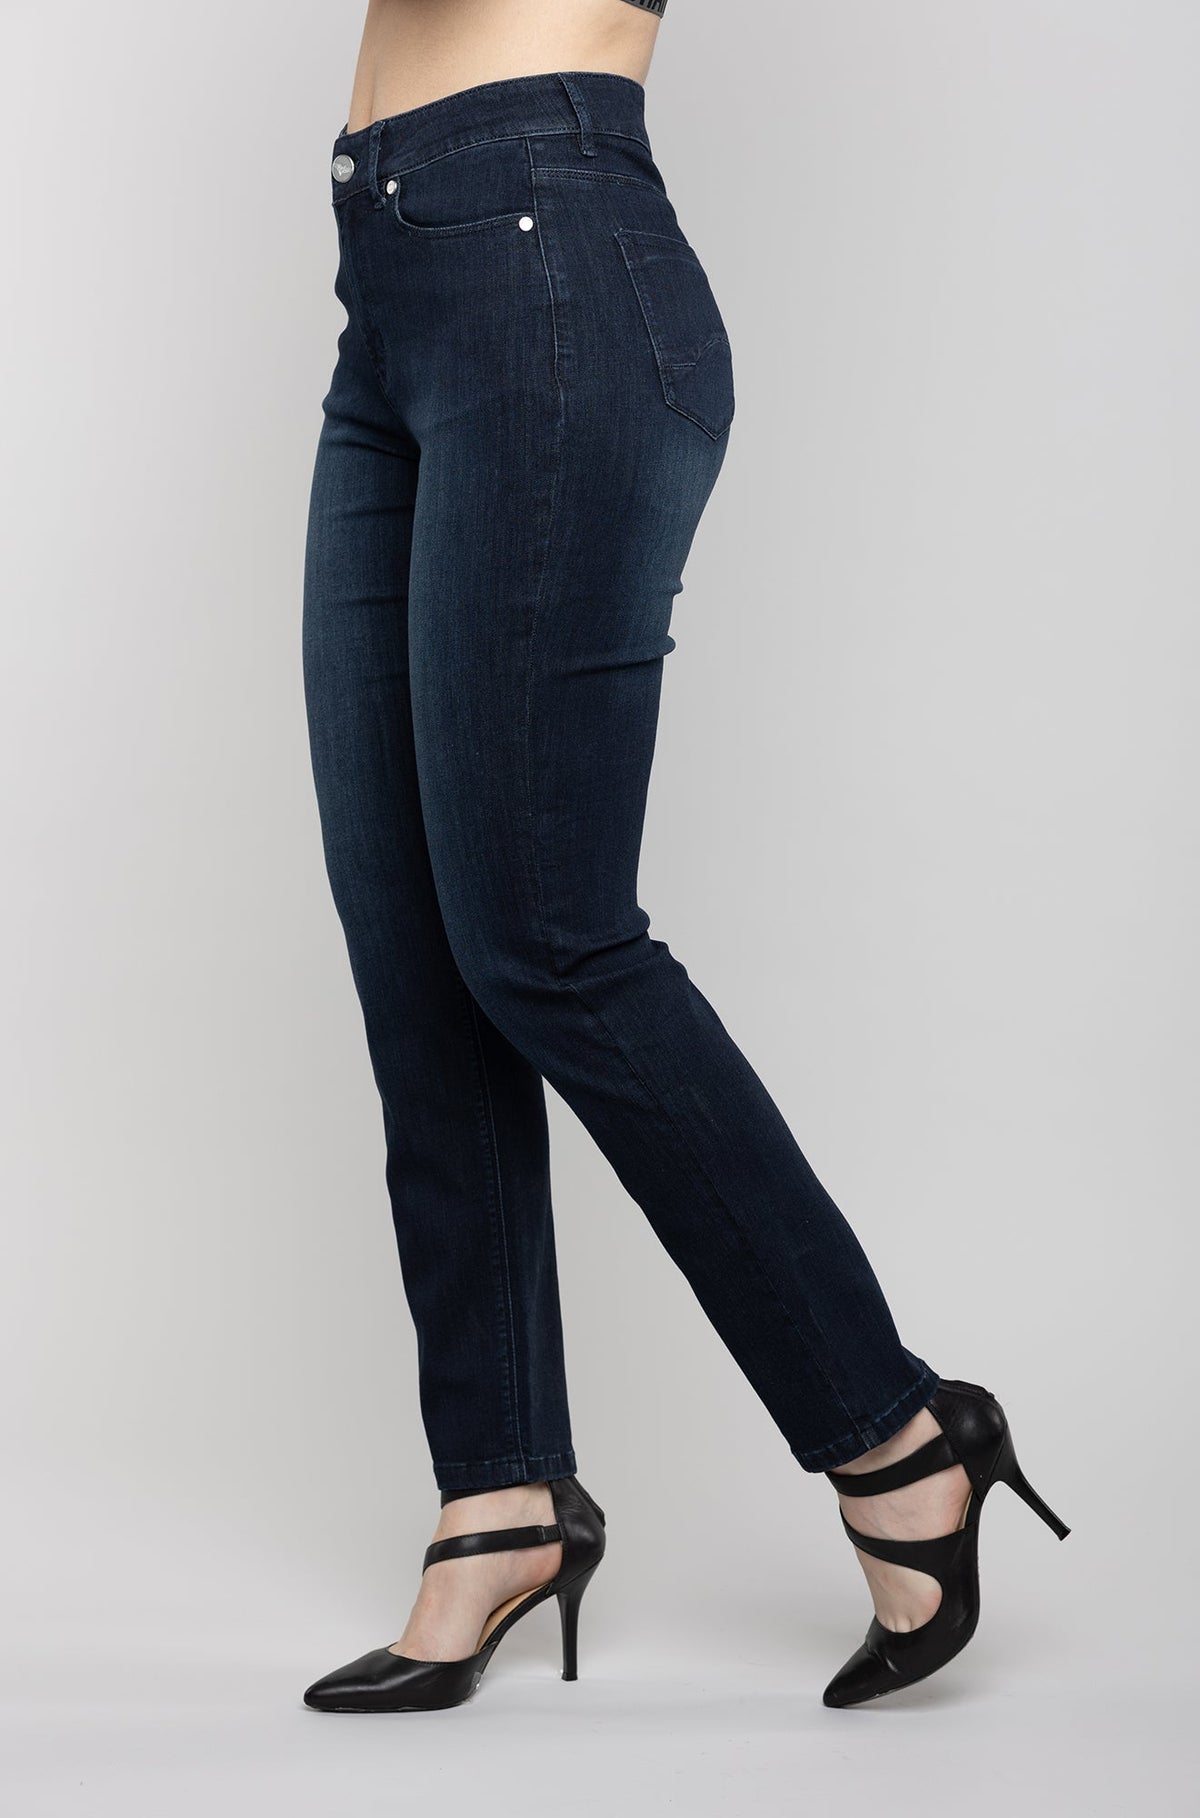 Jeans pour femme par Carreli Jeans | PR 161 DS | Boutique Vvög, vêtements mode pour homme et femme